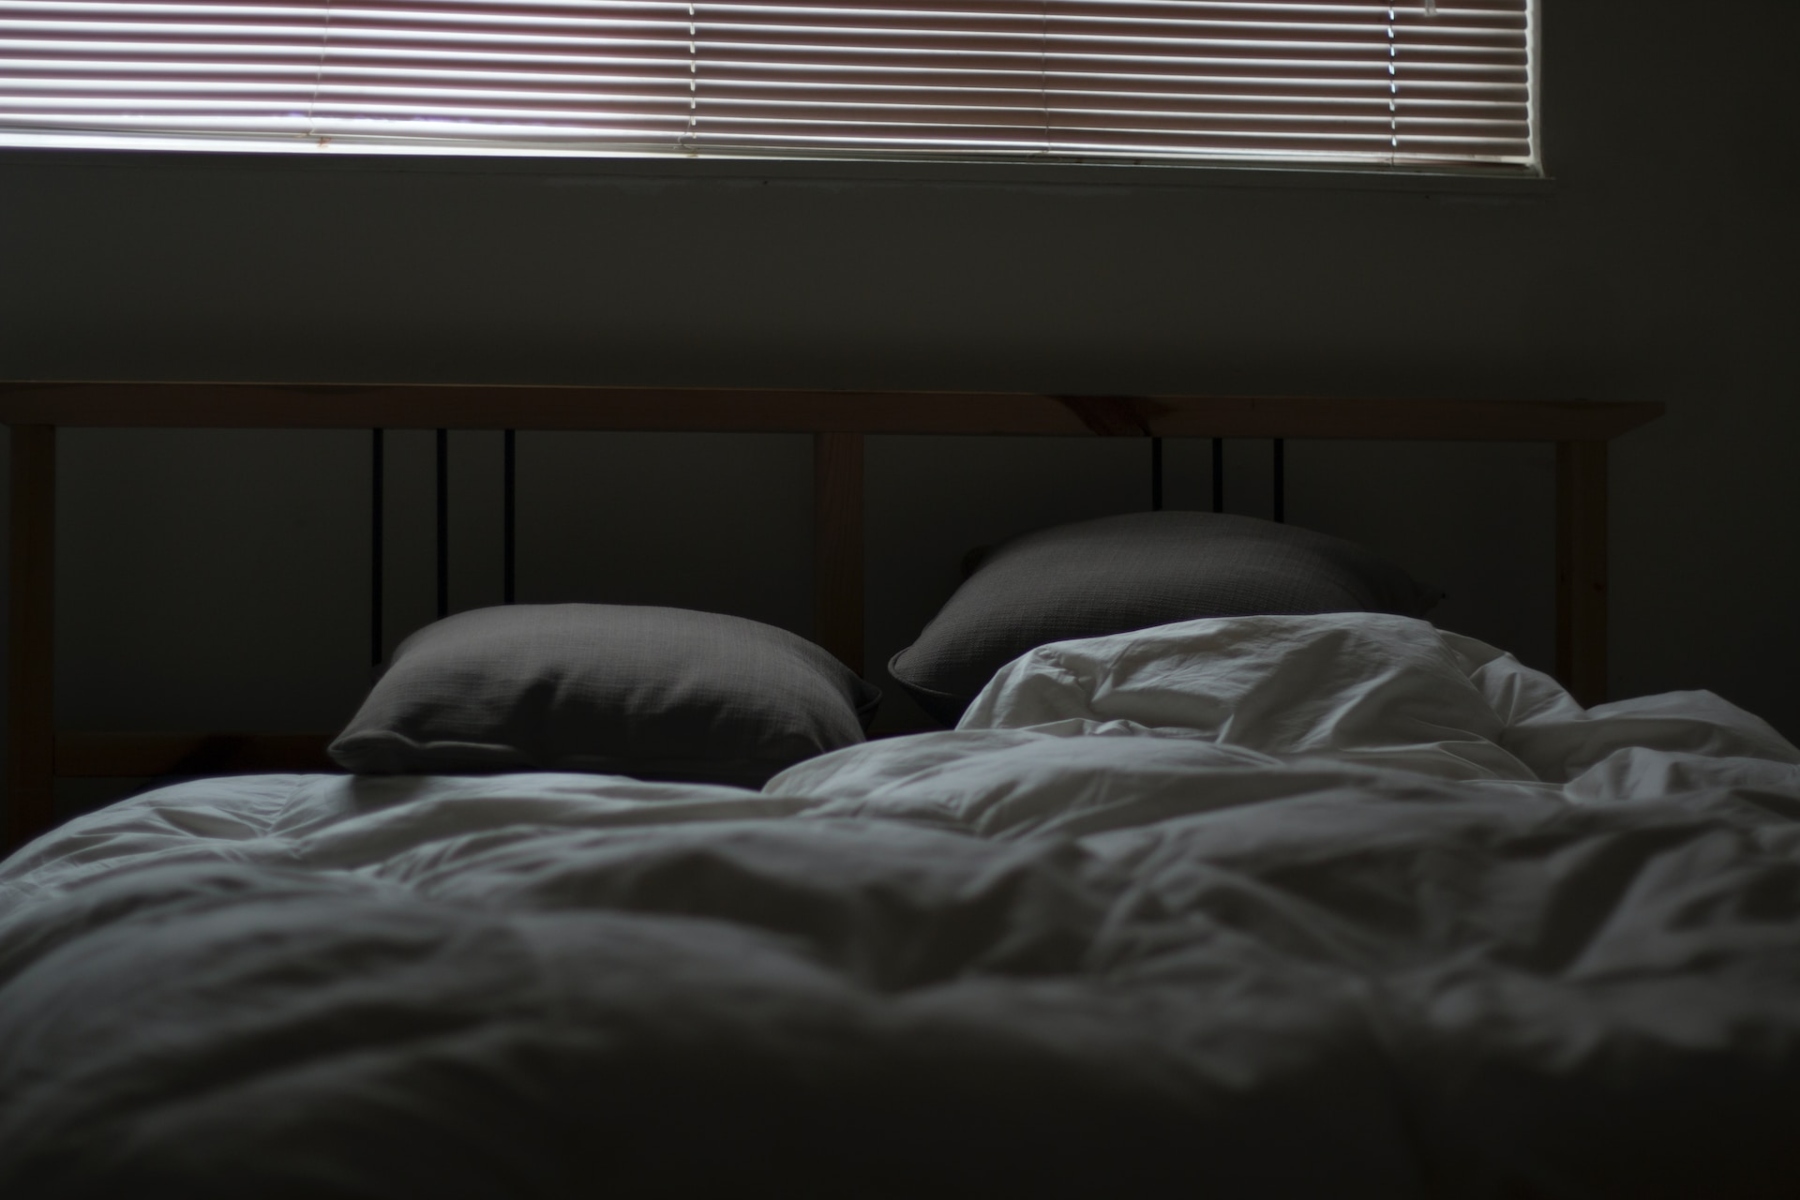 Εξάψεις ύπνος: Ο καλός ύπνος είναι απαραίτητος για ένα υγιές σώμα και πνεύμα αλλά οι εξάψεις μπορούν να διαταράξουν τον ύπνο μας